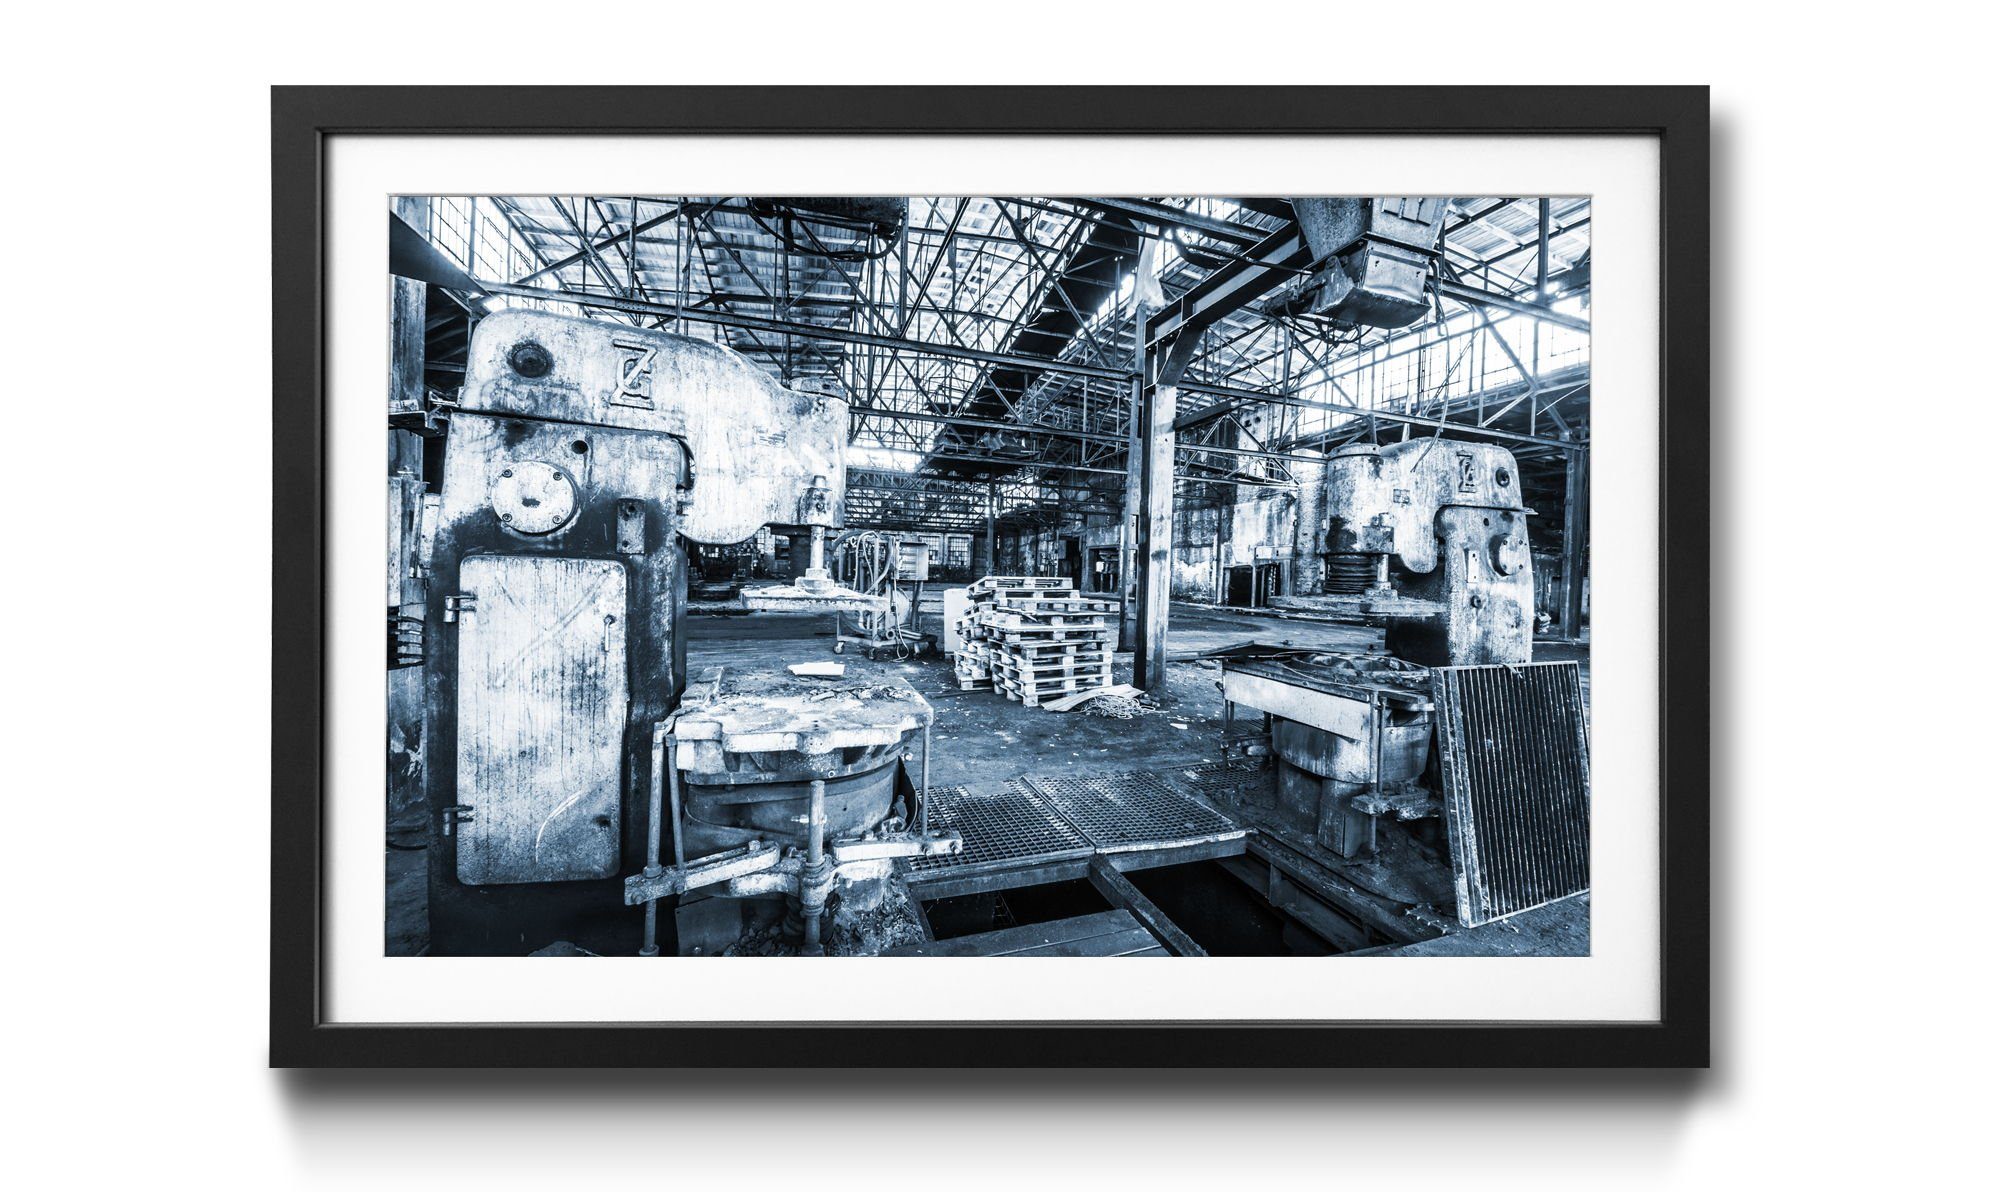 Günstiger Versandfachhandel! WandbilderXXL Bild mit Rahmen in Place, erhältlich Wandbild, 4 Größen Warehouse, Lost Lost